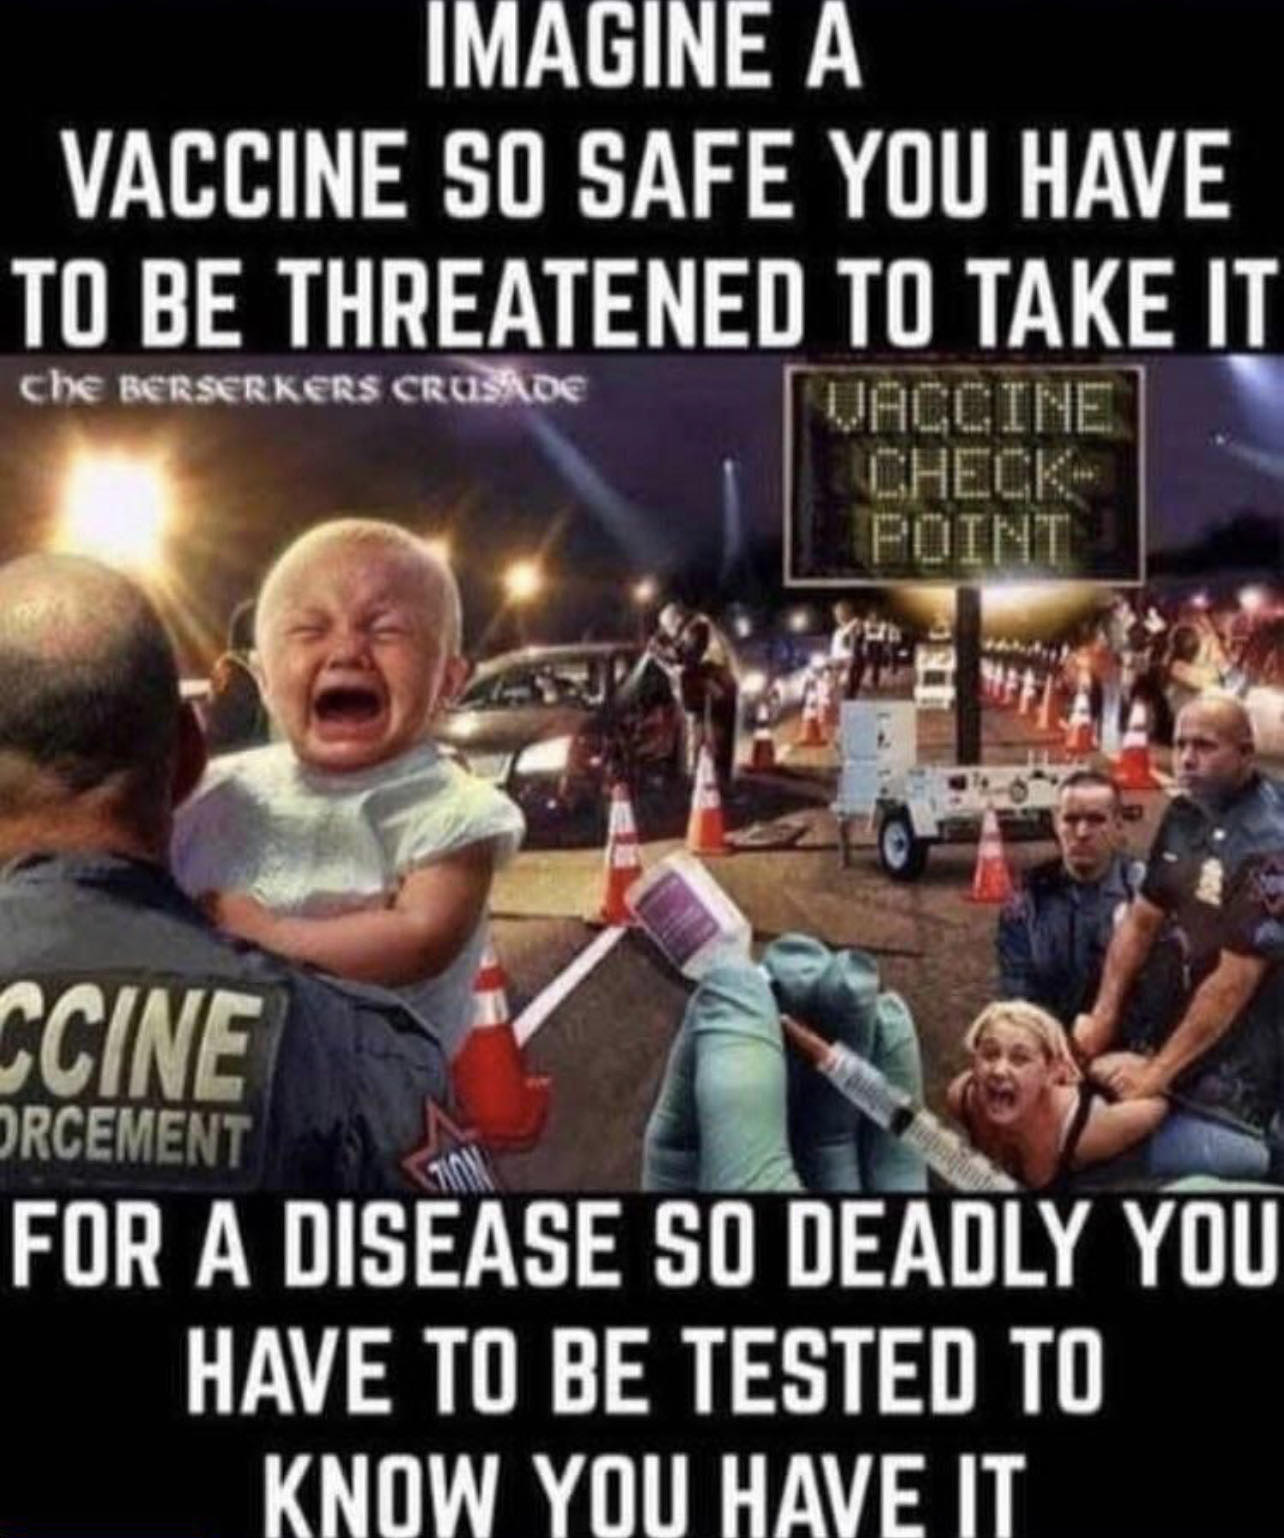 Όταν ήδη δυο παιδιά είναι σε κώμα εξ αιτίας των εμβολίων, στην Αυστραλία, θα εμβολιάσουν ΧΩΡΙΣ ΤΗΝ ΠΑΡΟΥΣΙΑ ΓΟΝΕΩΝ, 24.000 ΠΑΙΔΙΑ!!!!!!!!!!!!